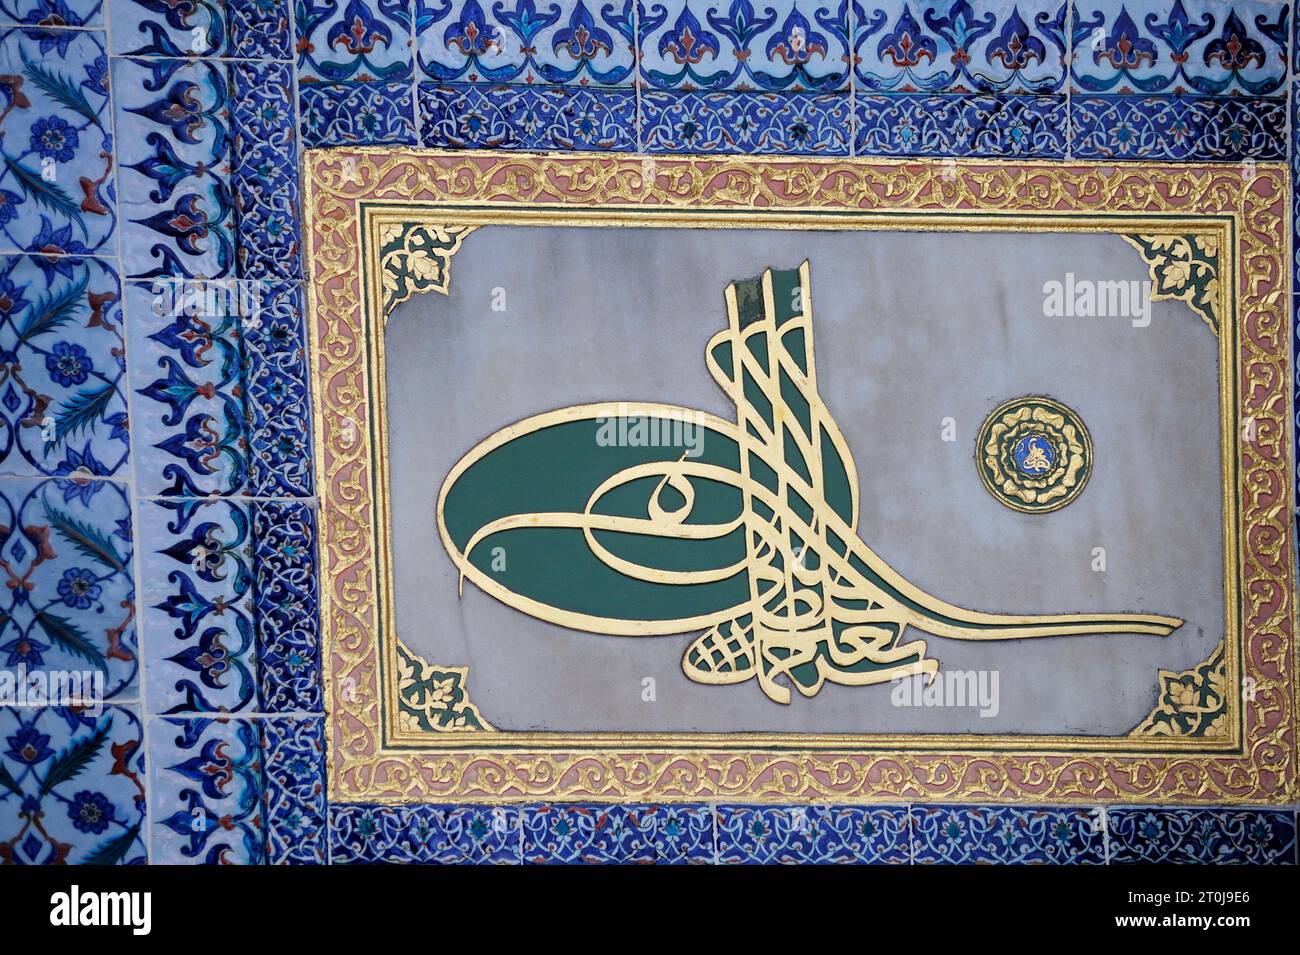 Estambul, Türkiye. Palacio de Topkapı (Topkapı Sarayı). Monograma caligráfico (tughra) de sultán otomano rodeado de azulejos Iznik Foto de stock